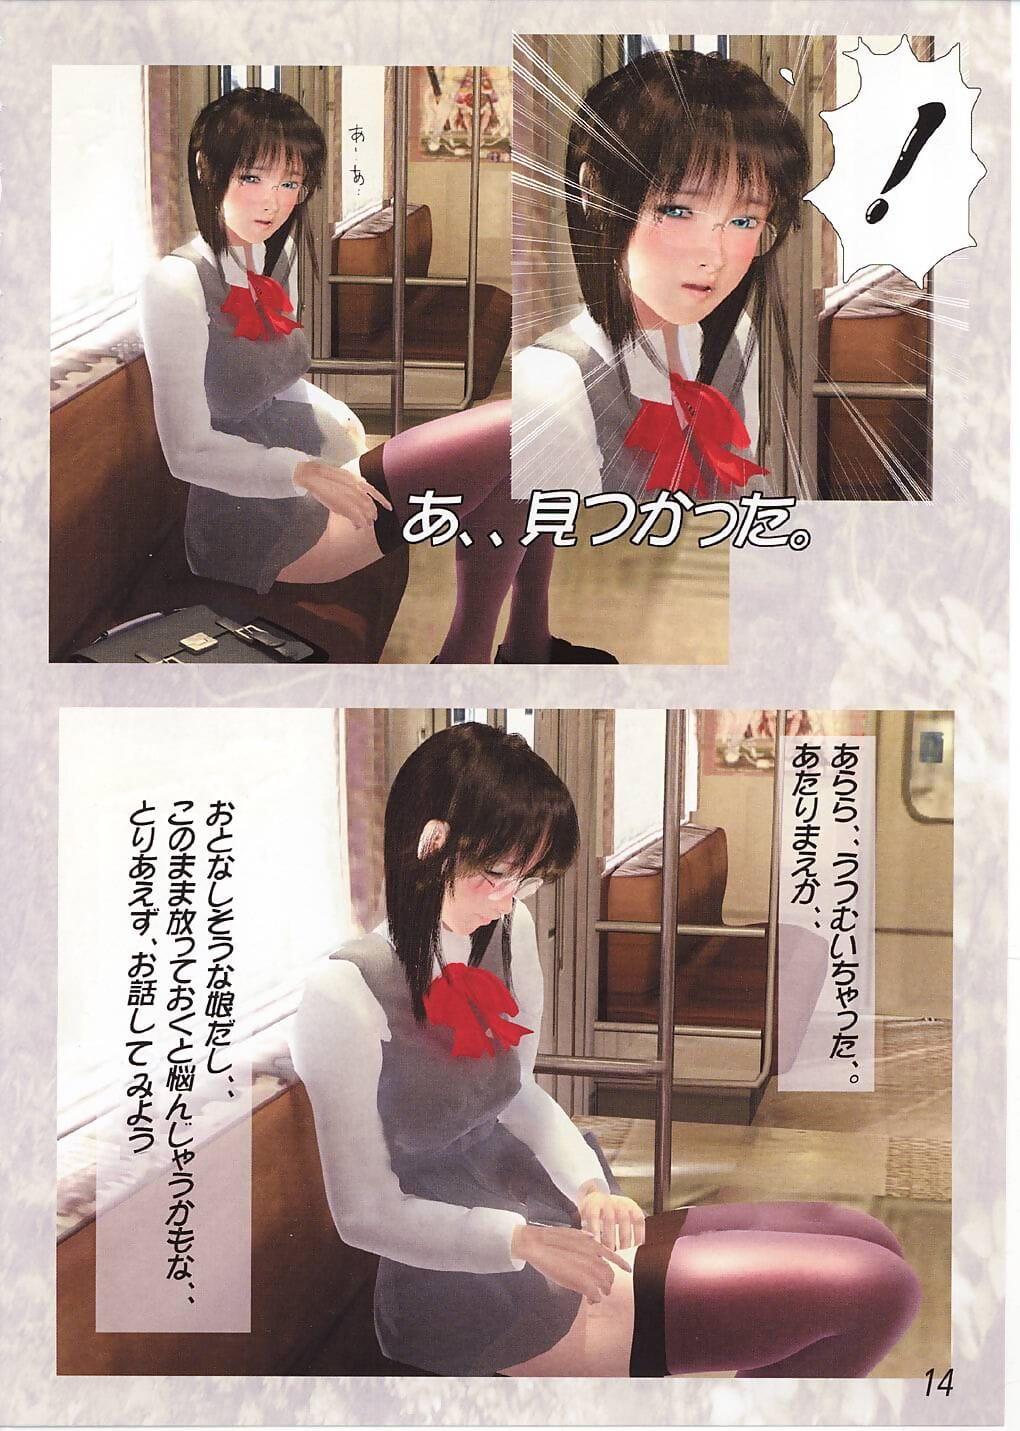 Megami Kyouten Aoki Reimu EroPolygon Vol.01 - part 2 page 1